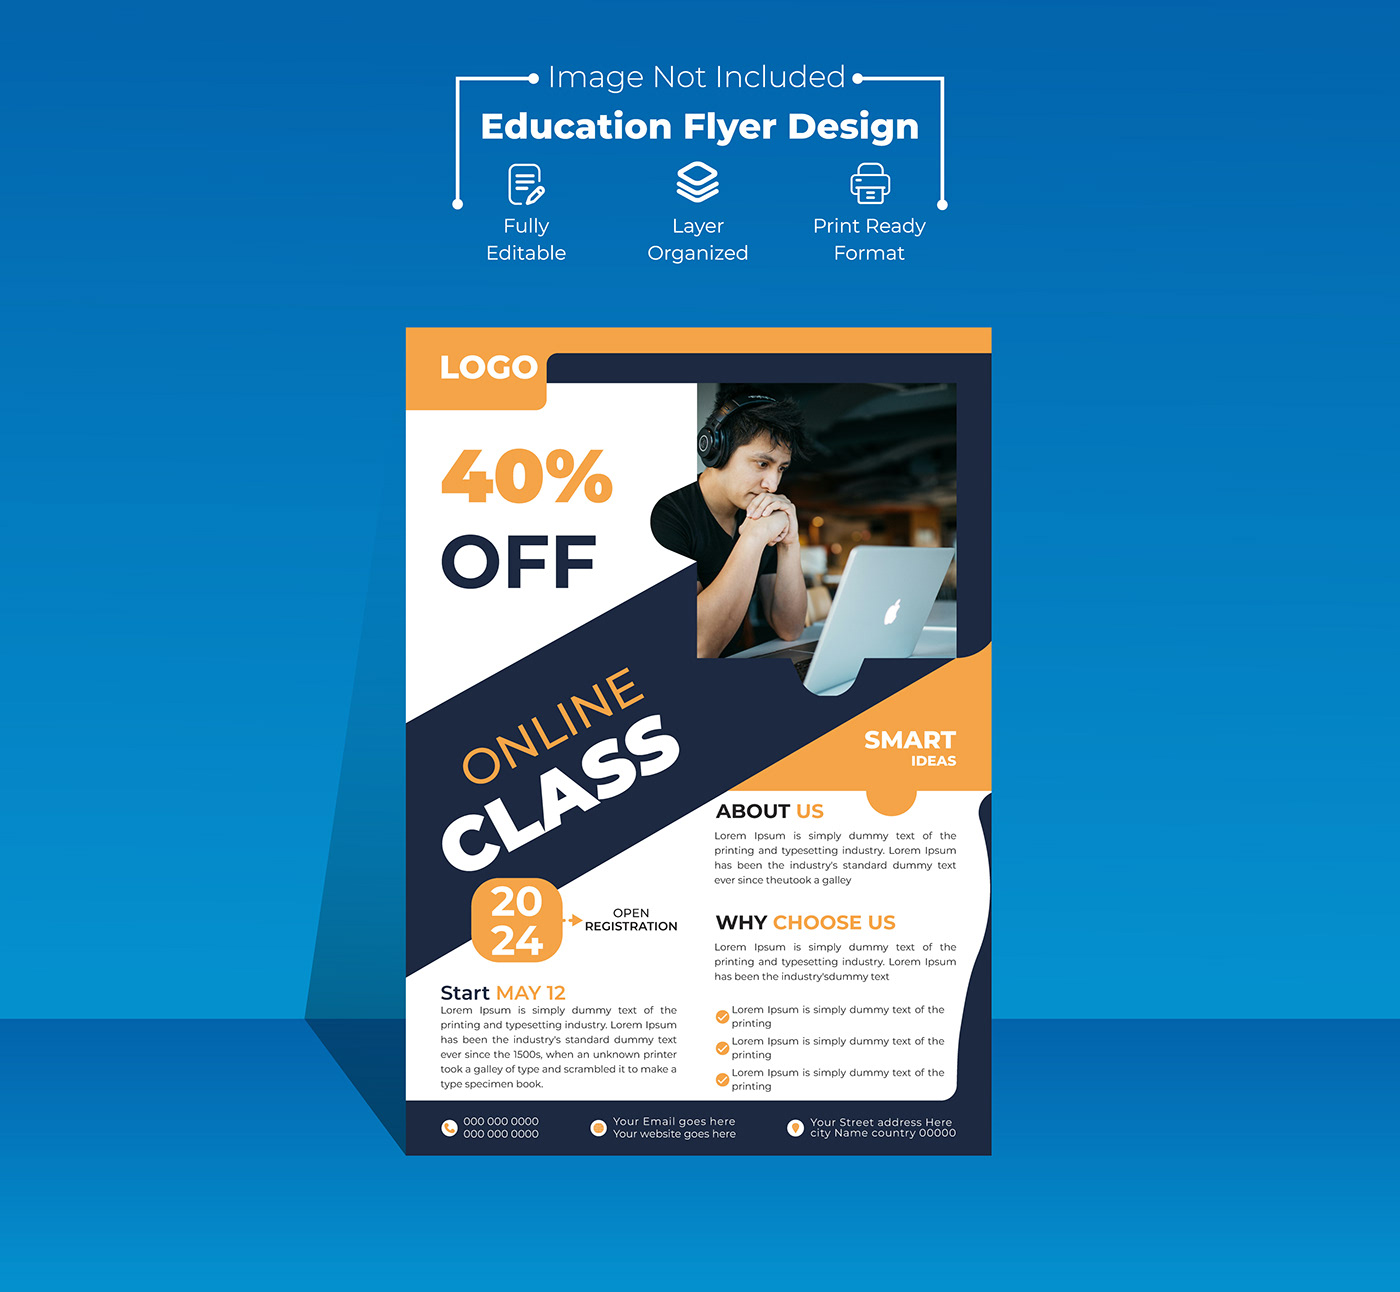 design Graphic Designer adobe illustrator schooldesign designer school Education flyers educationdesign schoolfurniture